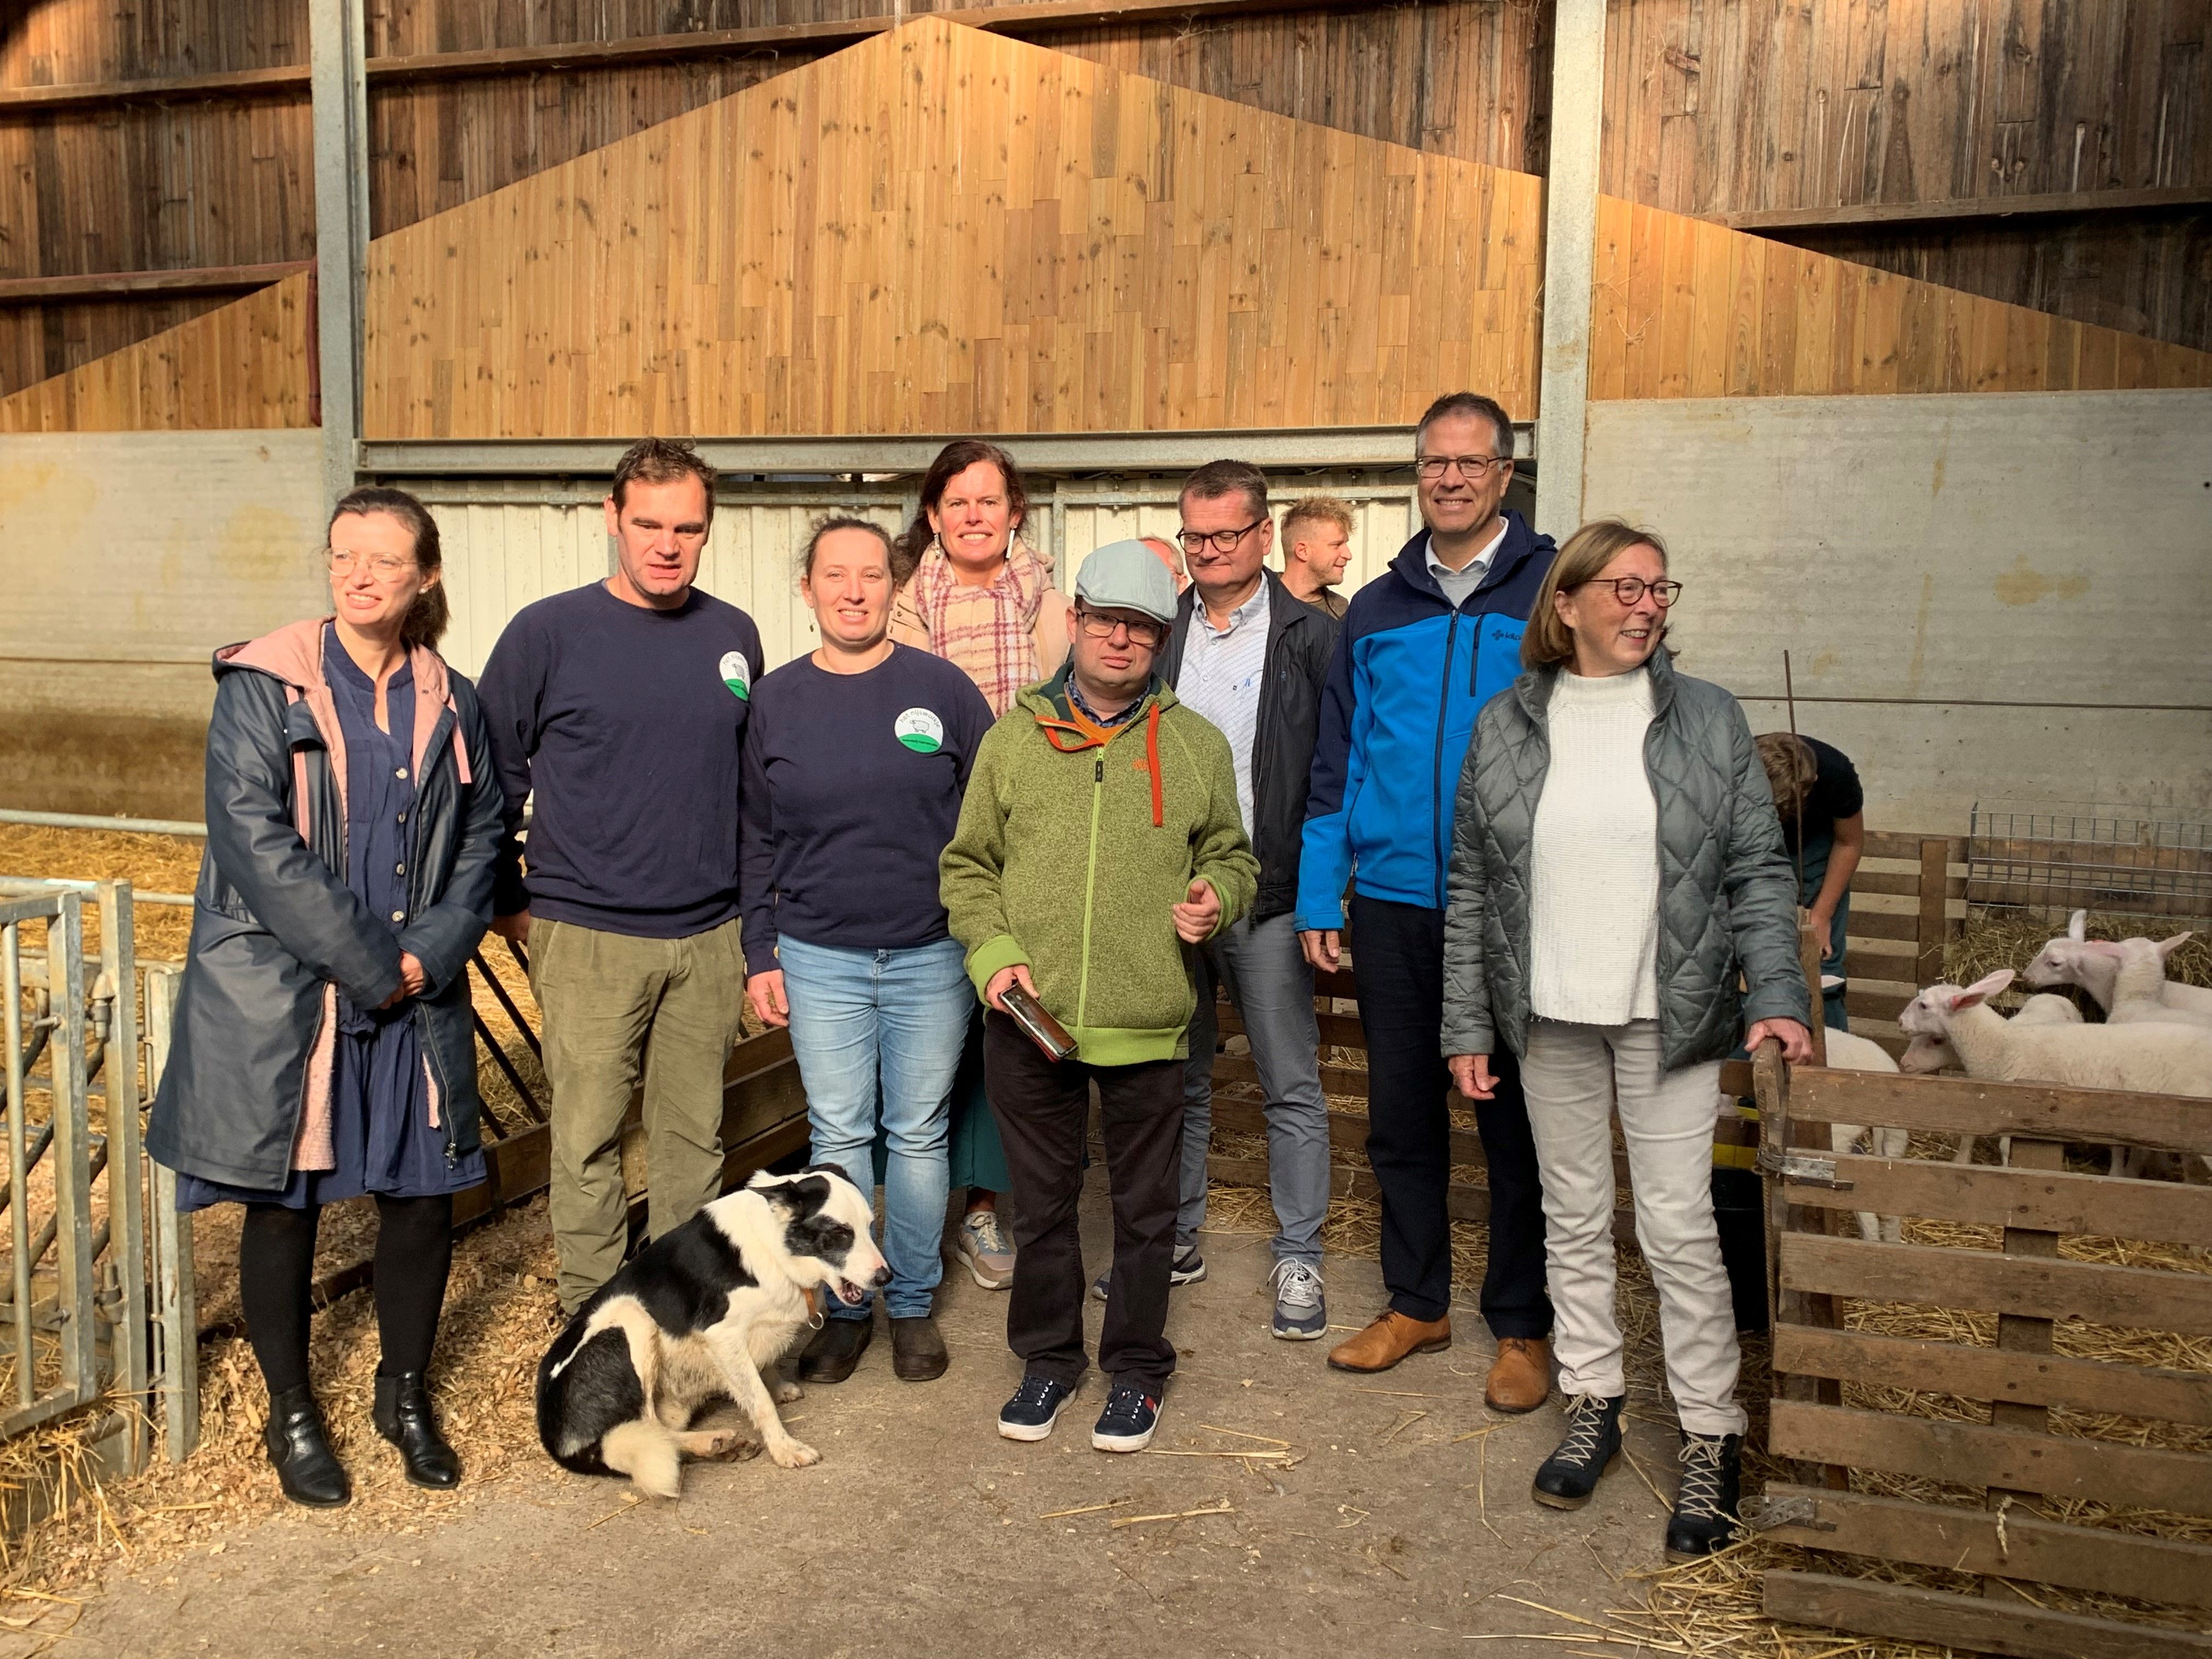 De provincie Vlaams-Brabant en Steunpunt Groene Zorg brachten een bezoek aan zorgboerderij 't Nijswolkje in Rillaar